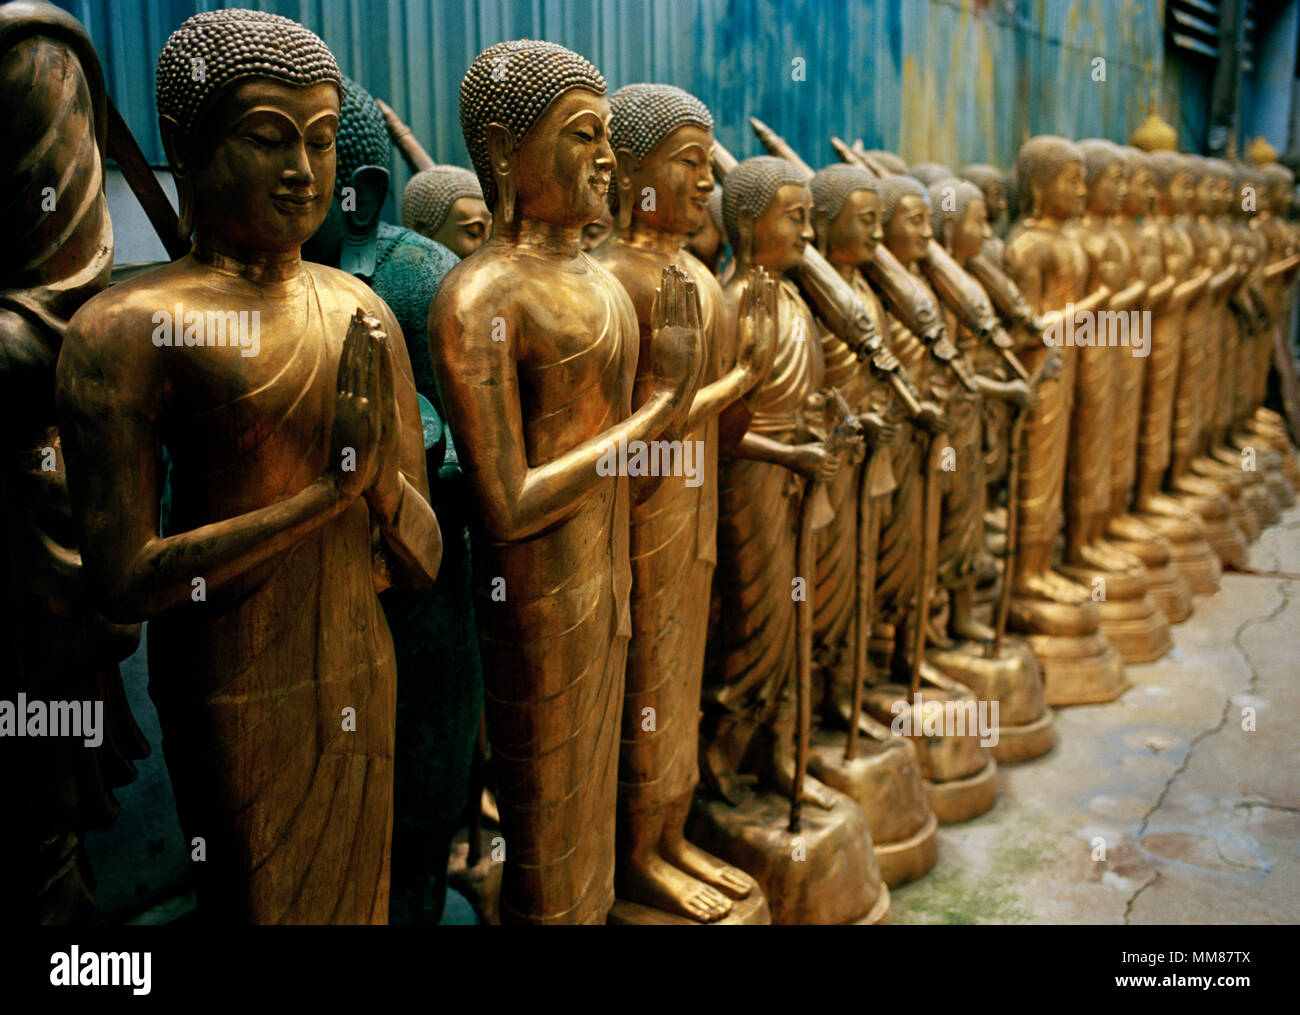 Il Buddismo tailandese - statua di Buddha arte in vendita in Bamrung Muang Road di Bangkok in Thailandia nel sud-est asiatico in Estremo Oriente. Serenità sereno viaggio buddista Foto Stock